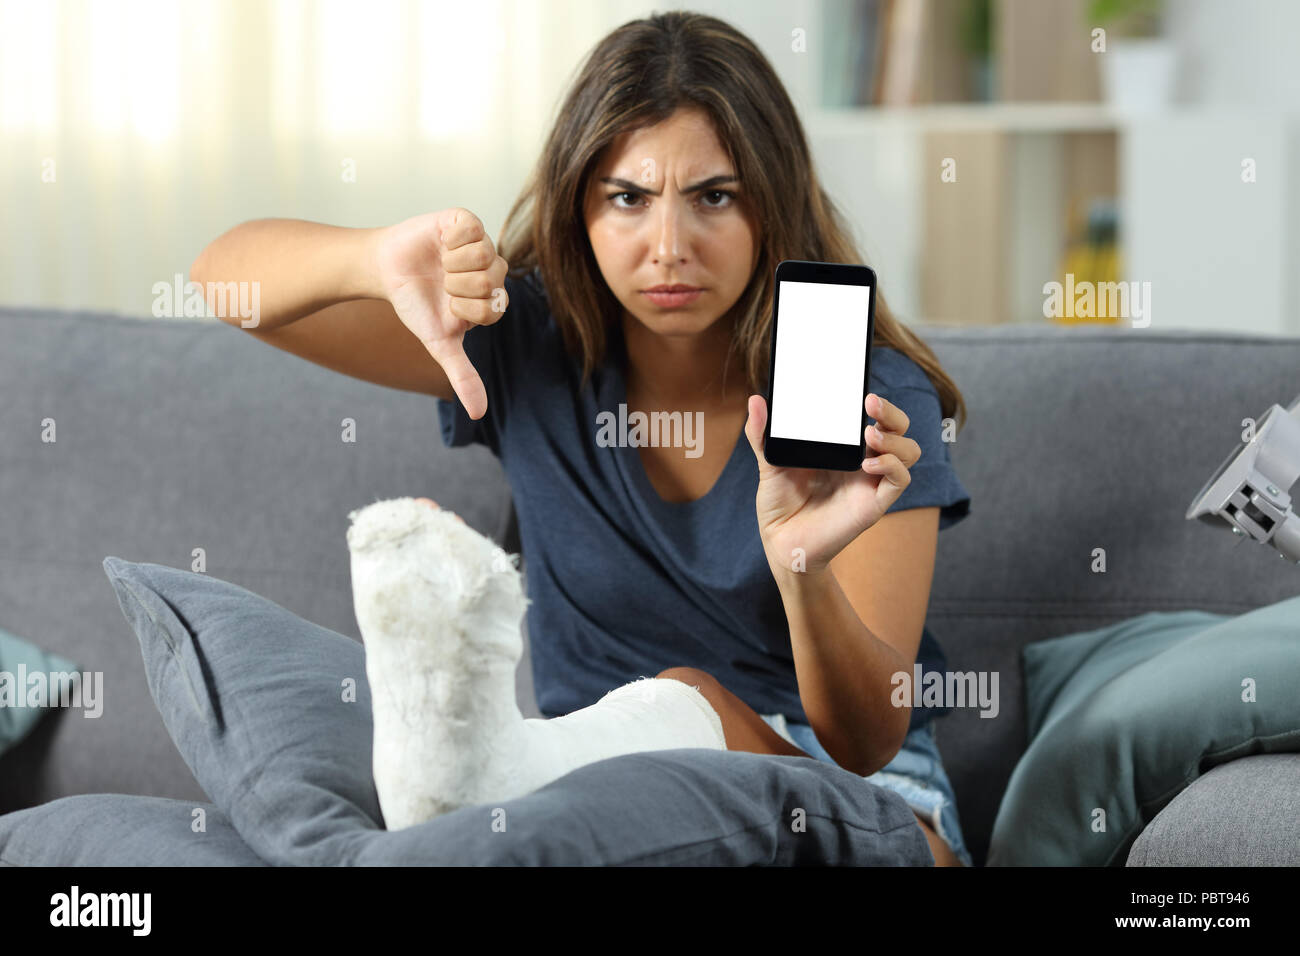 Сестра сидит в телефоне. Женщина сидит в телефоне. Сидит за телефоном. Девушка сидит на диване. Злая девушка с телефоном.